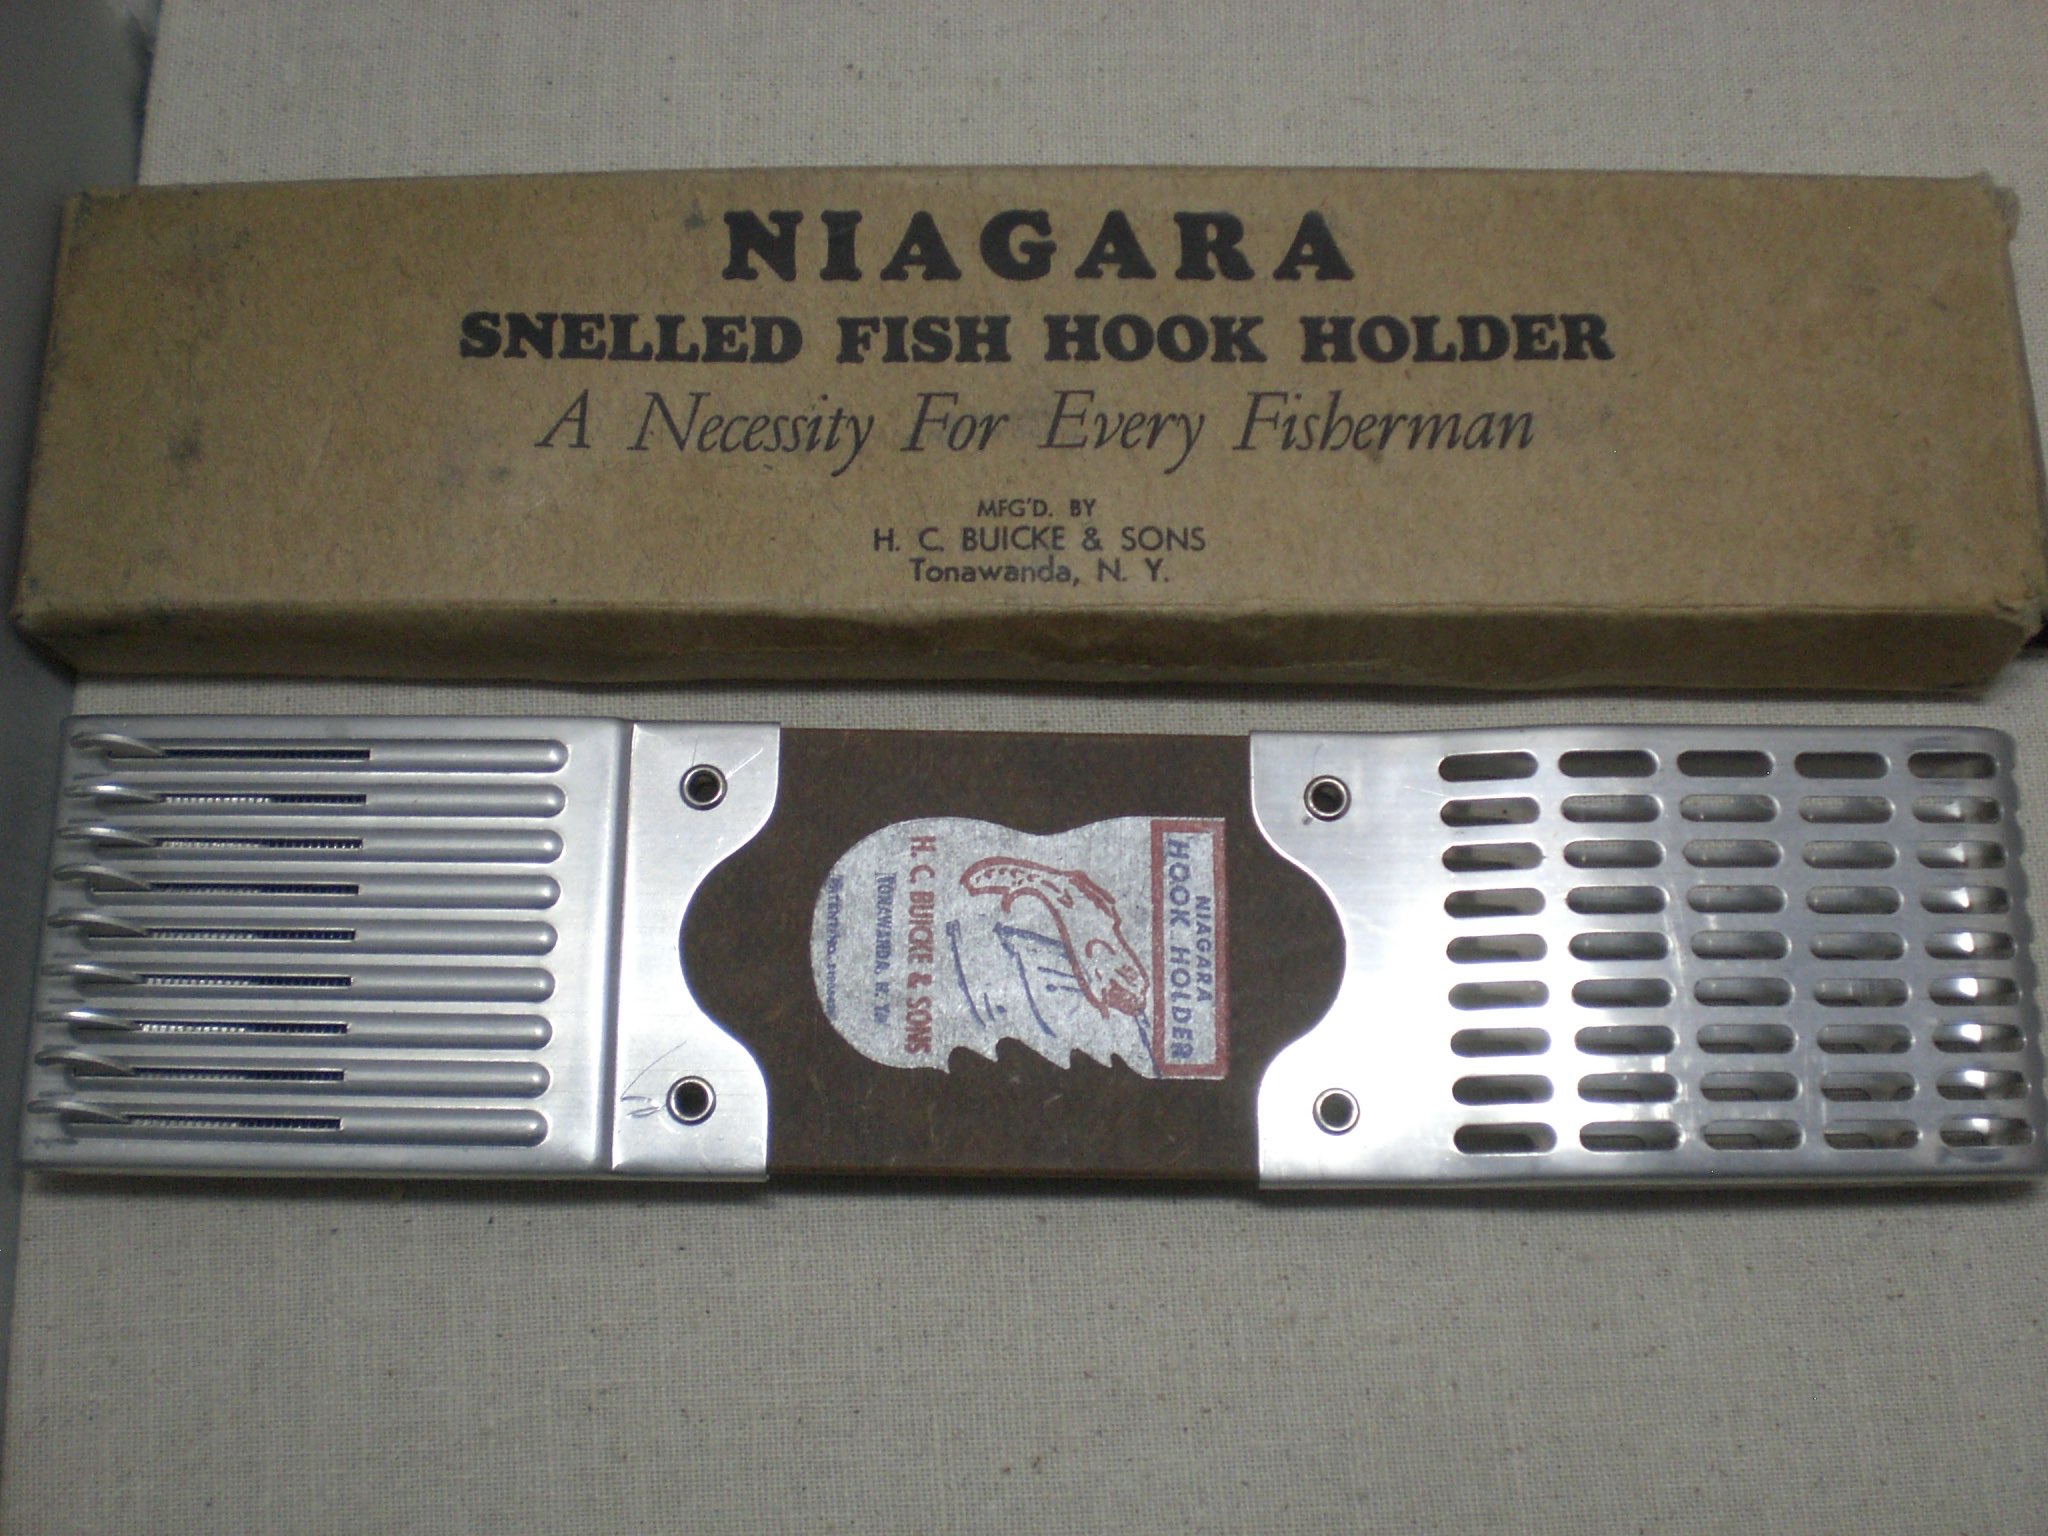 Niagara snelled fish hook holder